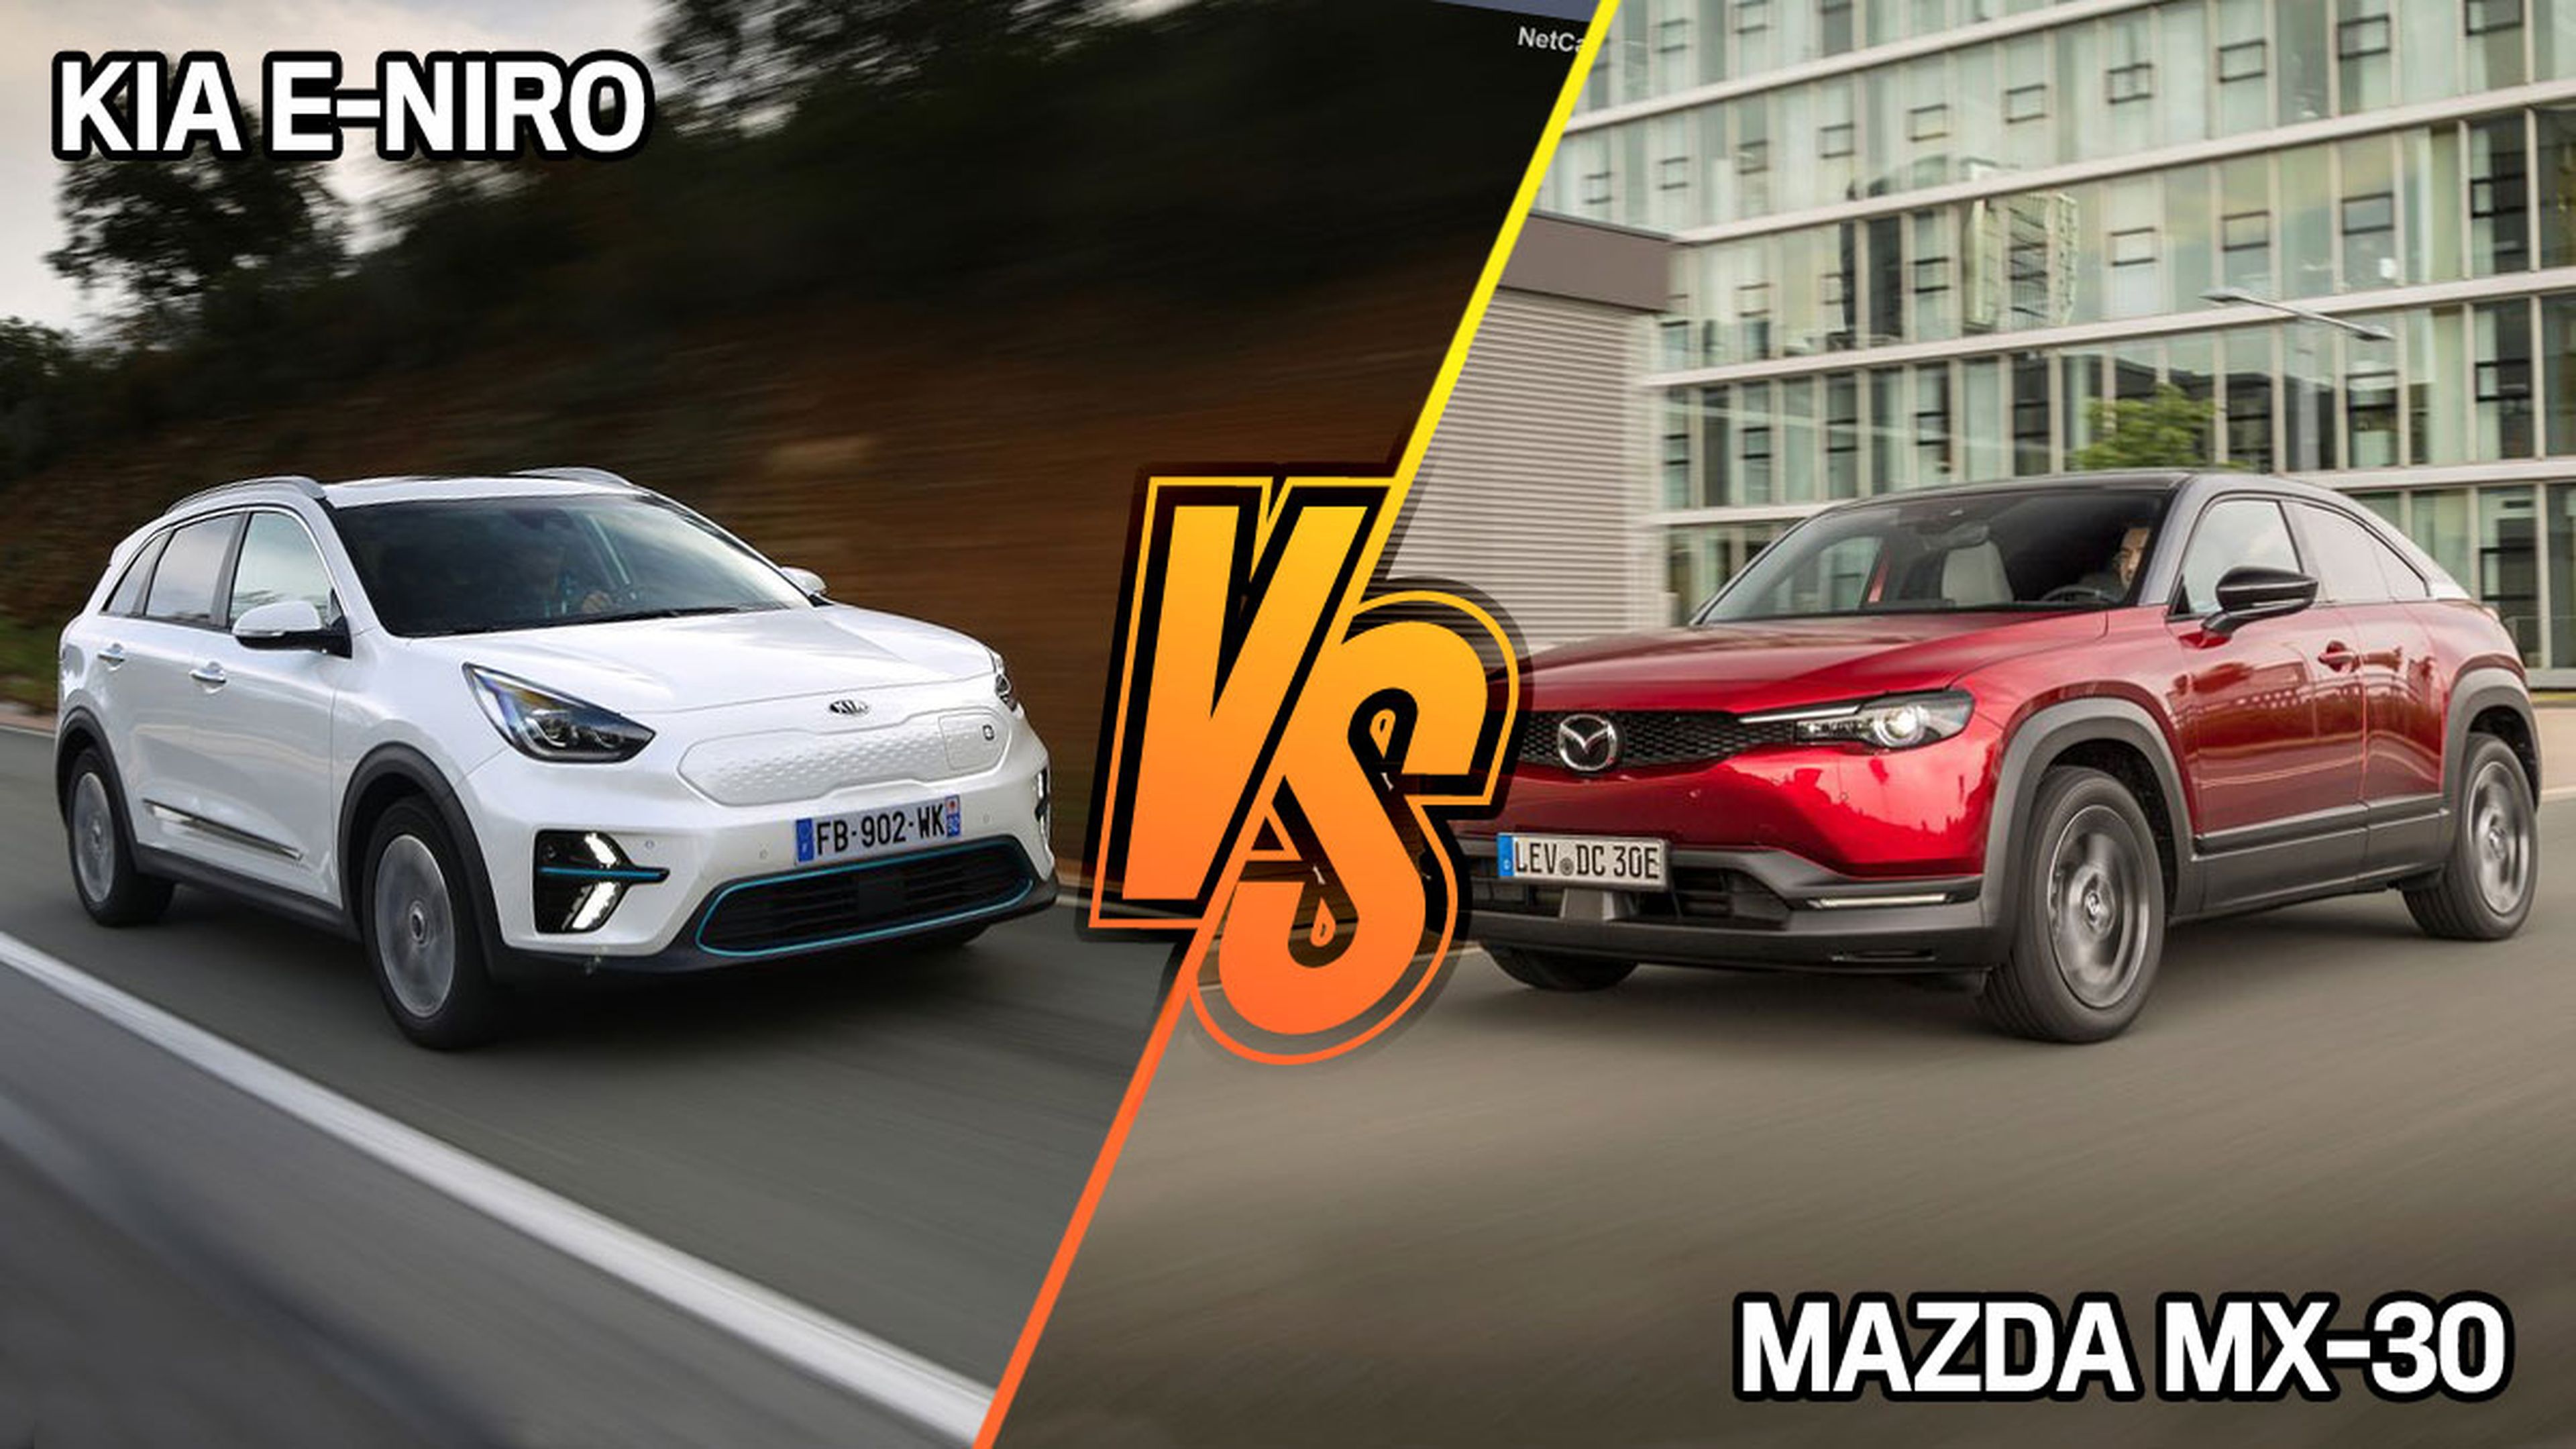 Kia e-Niro vs Mazda MX-30